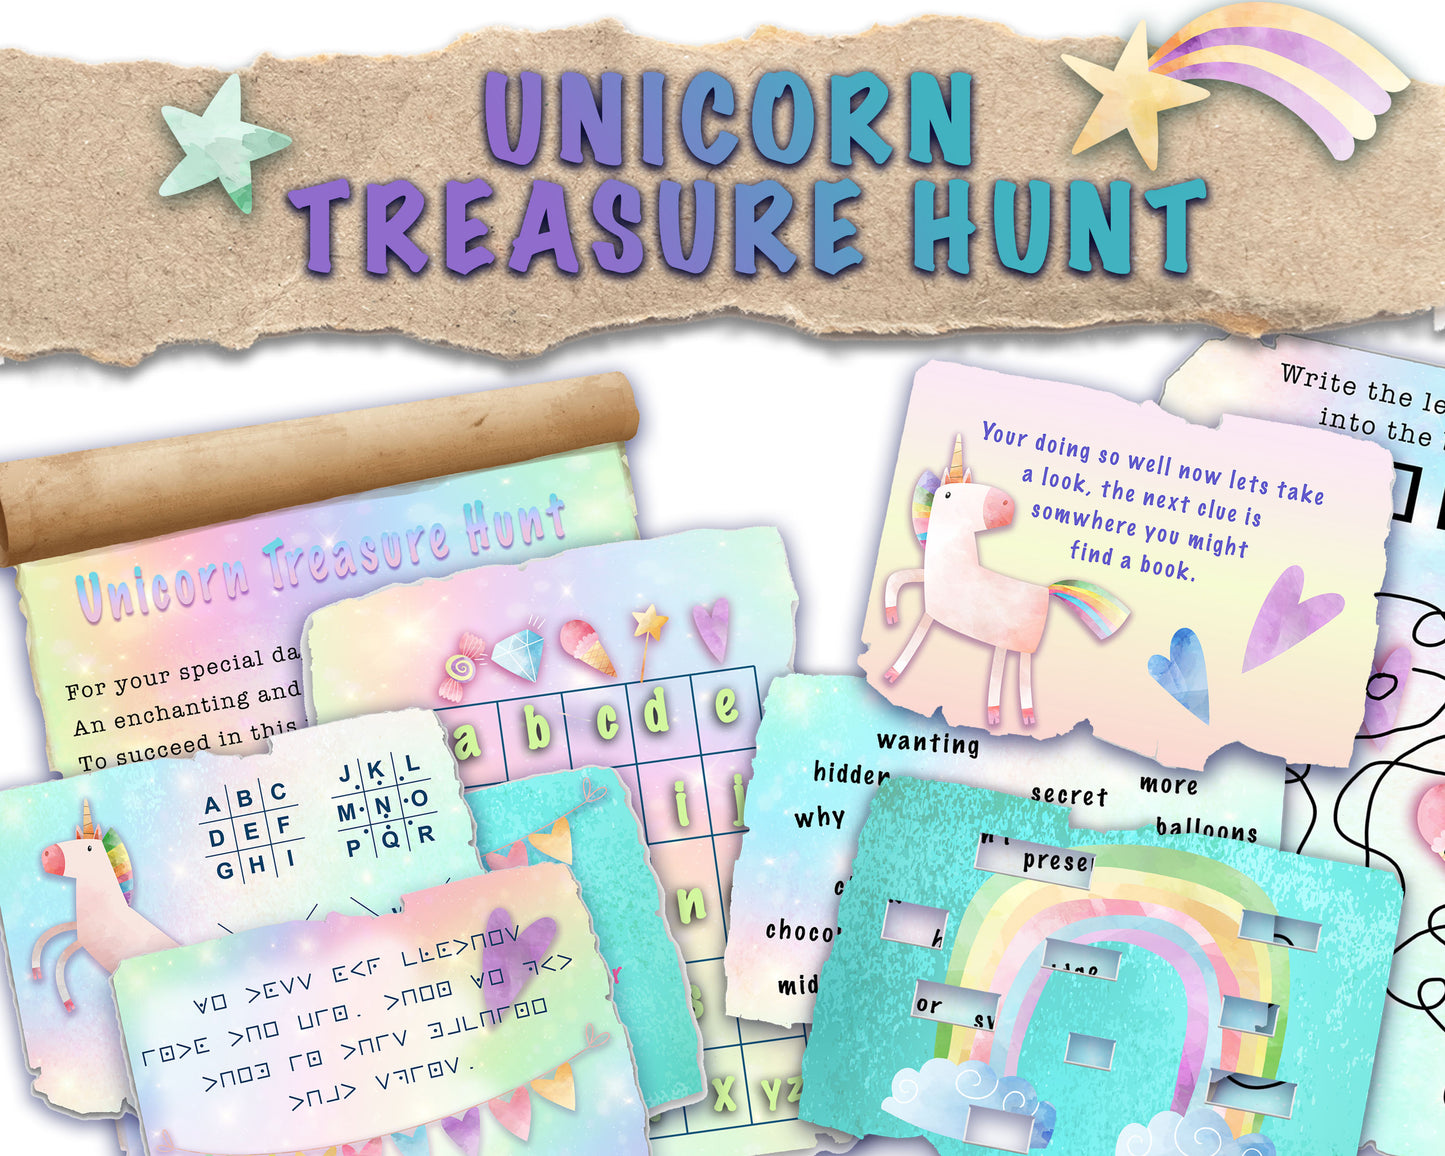 unicorn treasure hunt clues